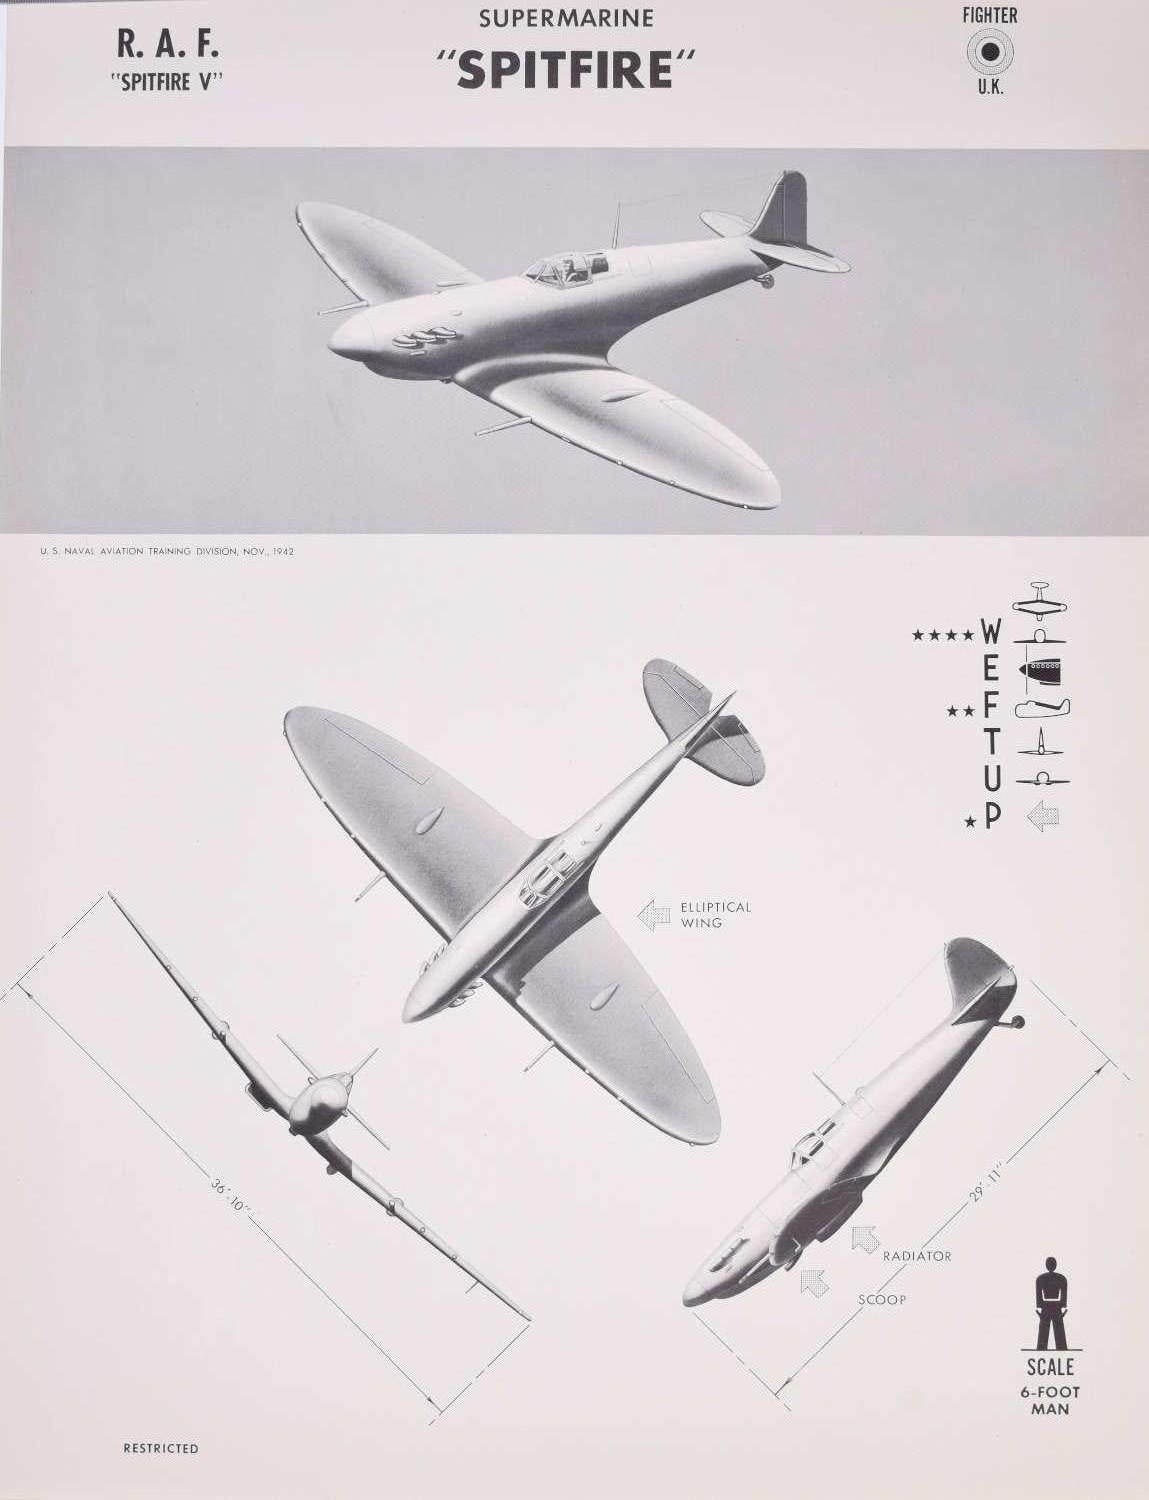 Print Unknown - Affiche de reconnaissance d'avions de la Royal Air Force datant de 1943, Spitfire Fighter, datant de la Seconde Guerre mondiale, États-Unis Navy